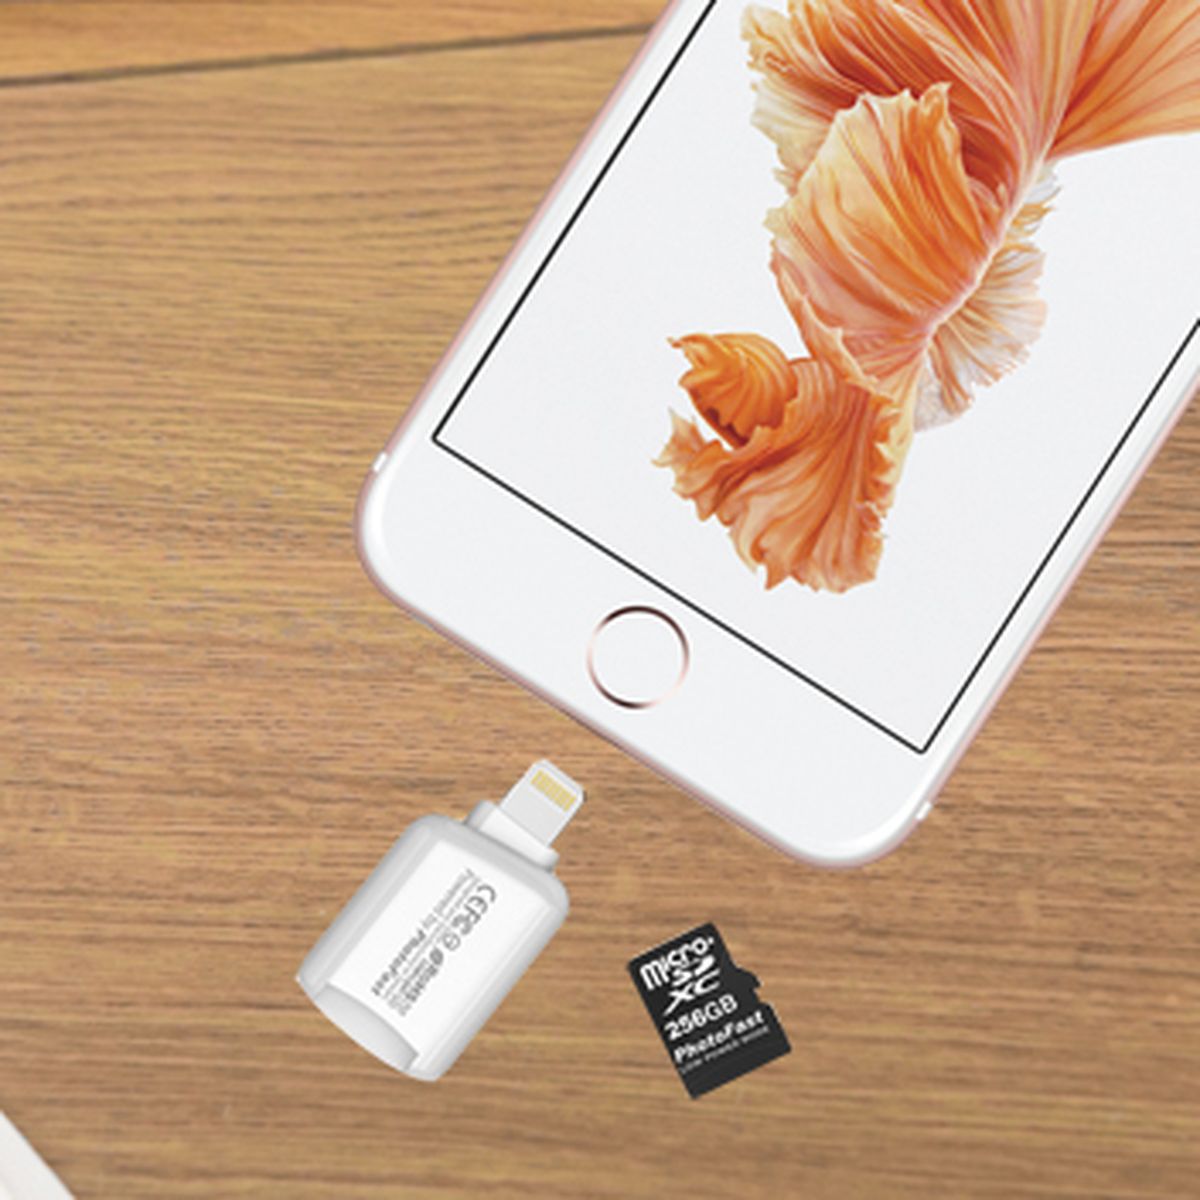 Cómo conectar una tarjeta microSD al iPhone